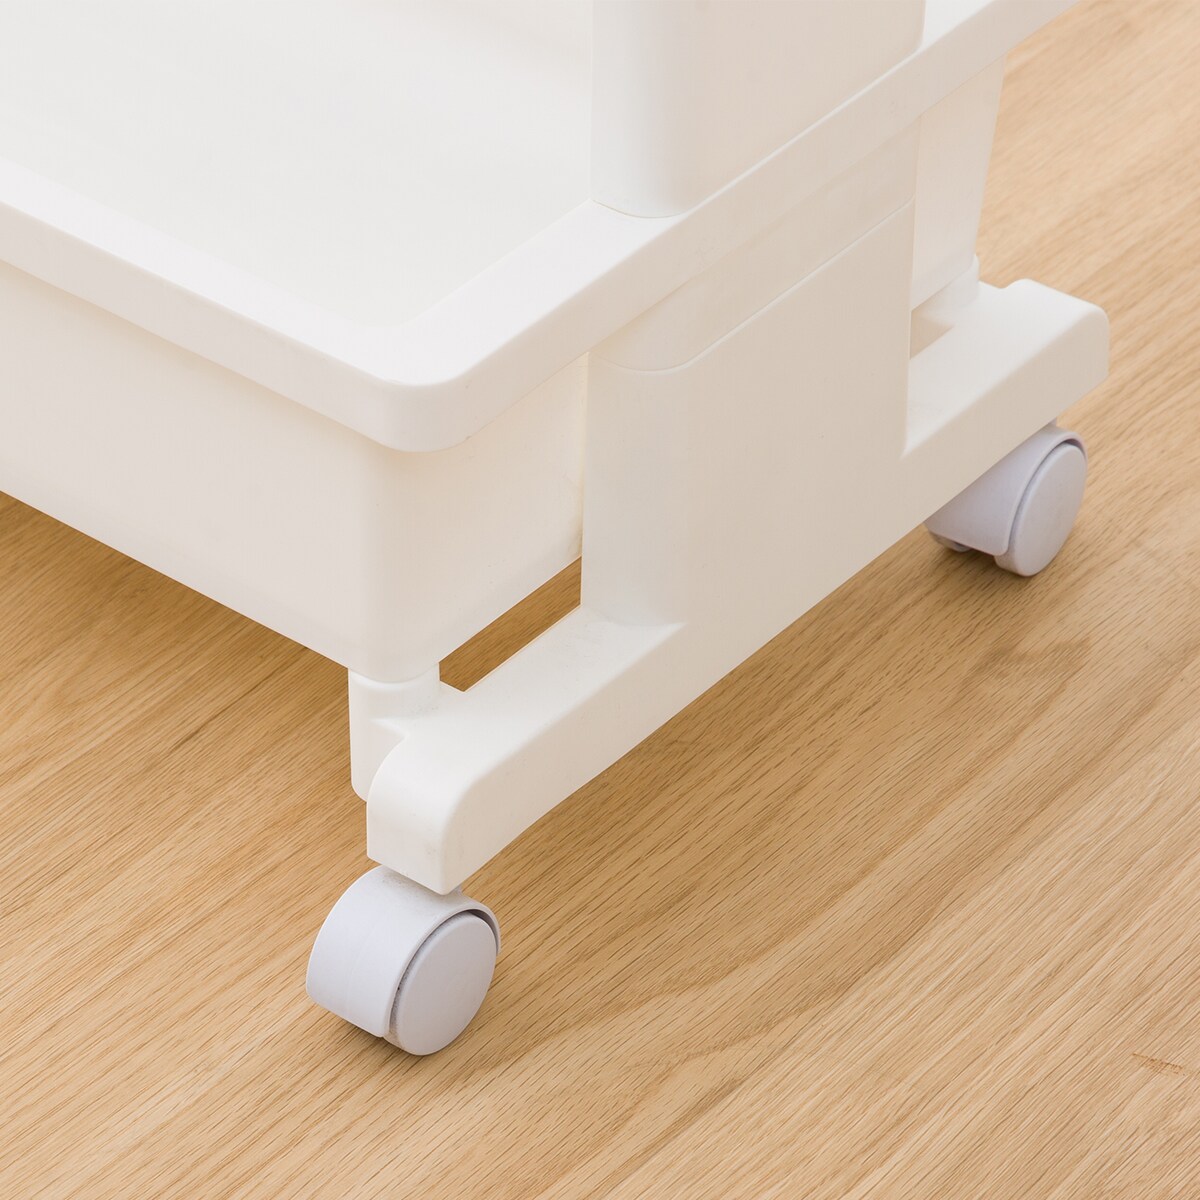 軽くて組立簡単 テーブルワゴン(3段 ホワイト)通販 | ニトリネット【公式】 家具・インテリア通販